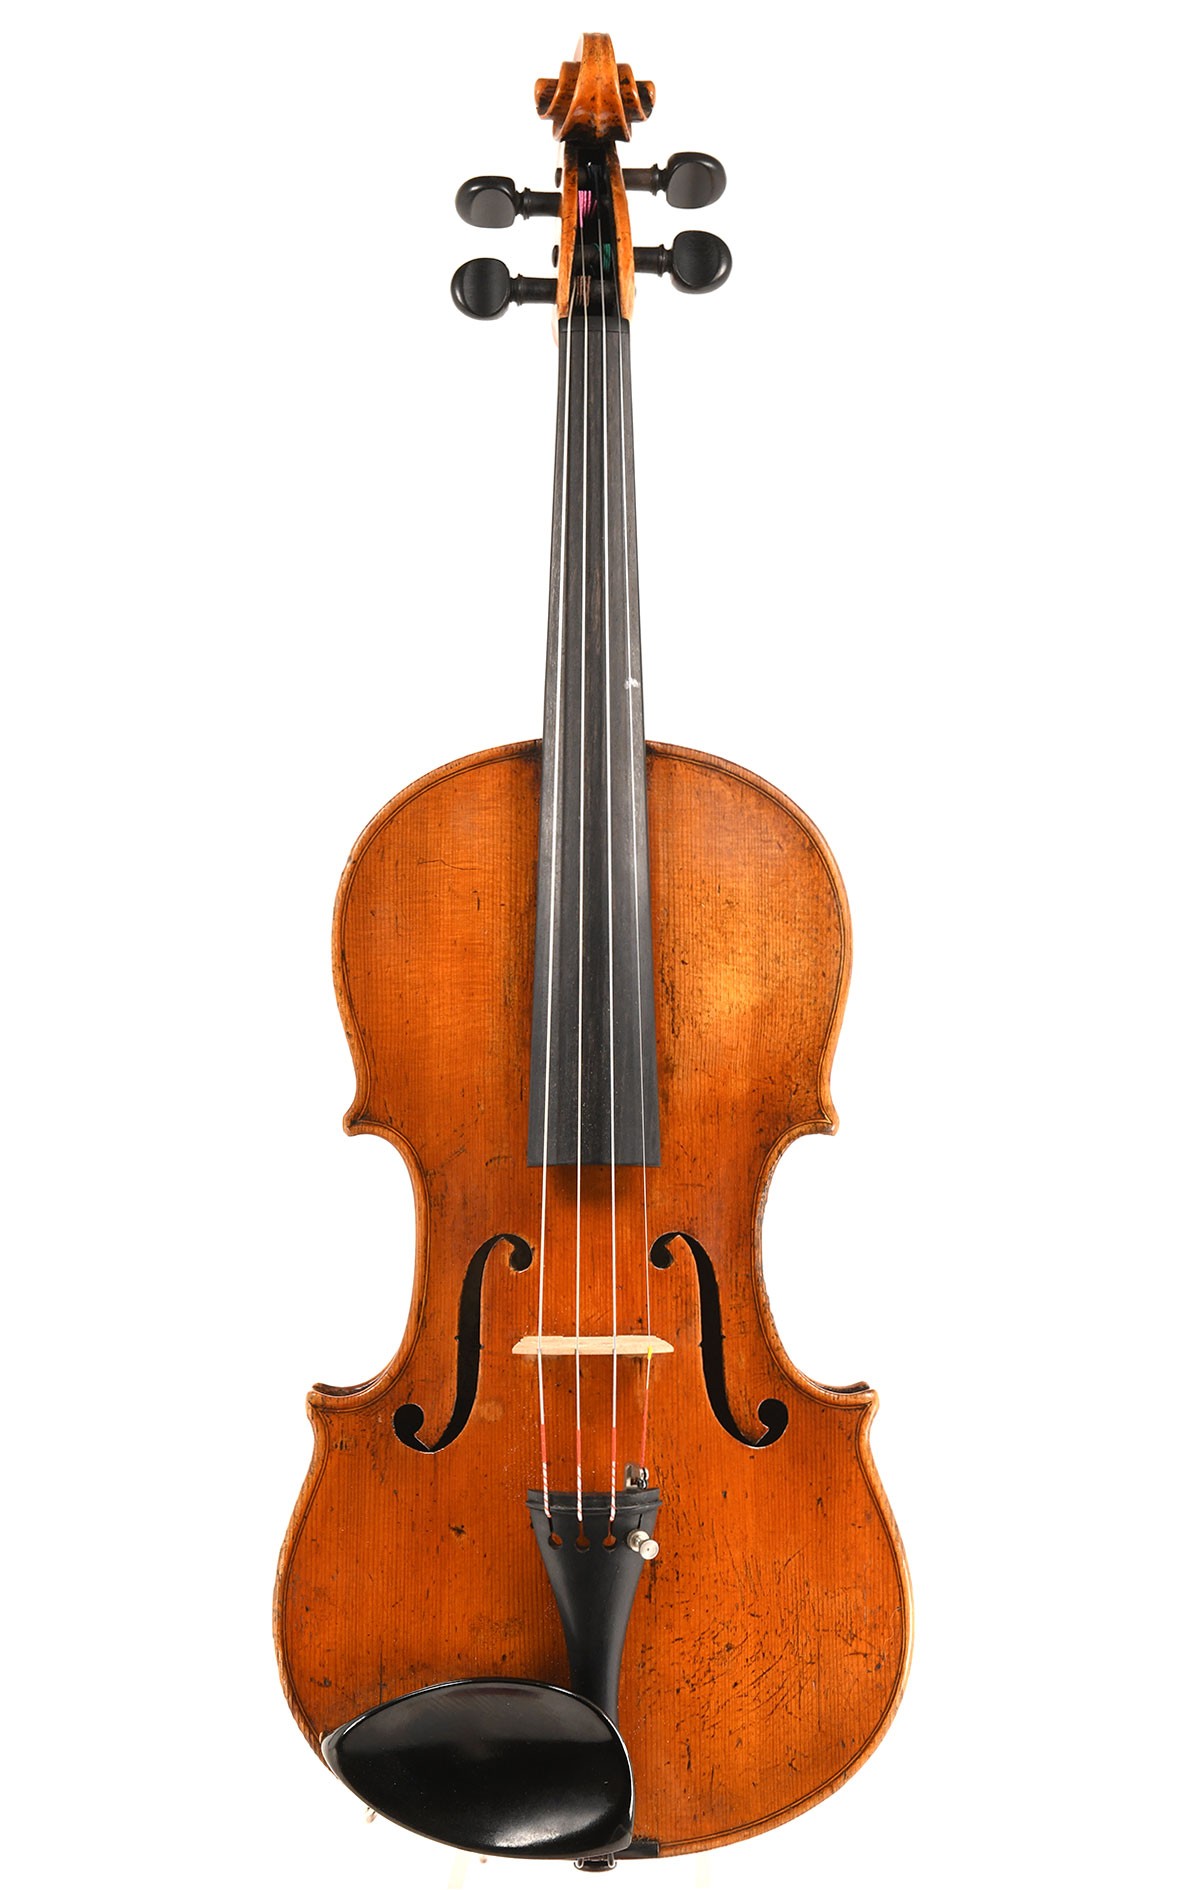 Violin by Lowendall workshop in Dresden